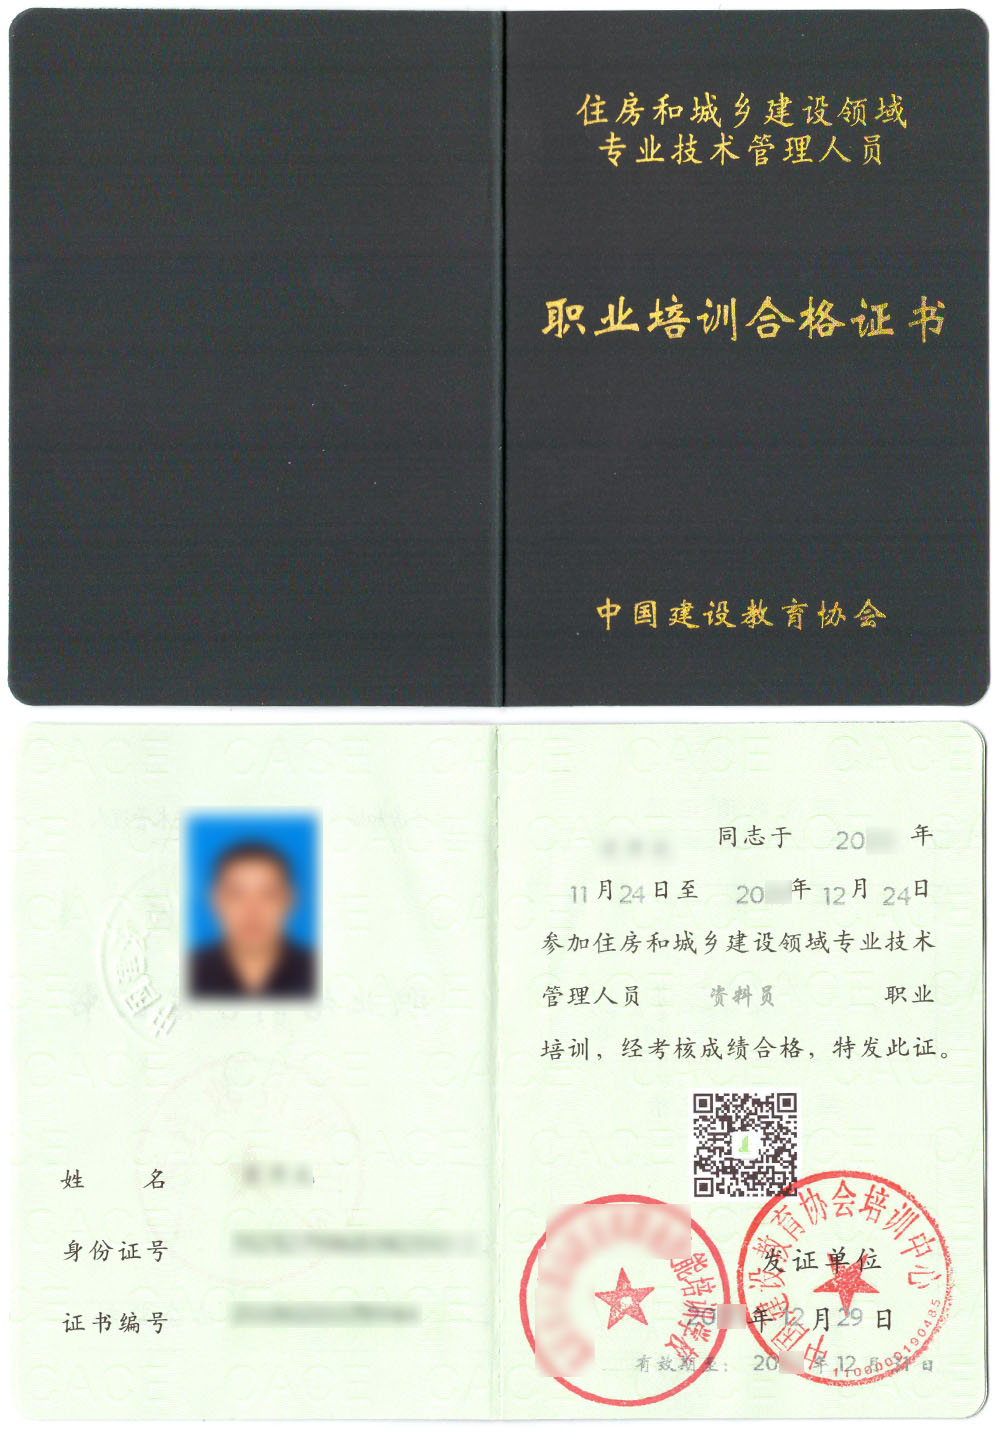 中国建设教育协会 住房和城乡建设领域专业技术管理人员职业培训合格证书 资料员证证书样本